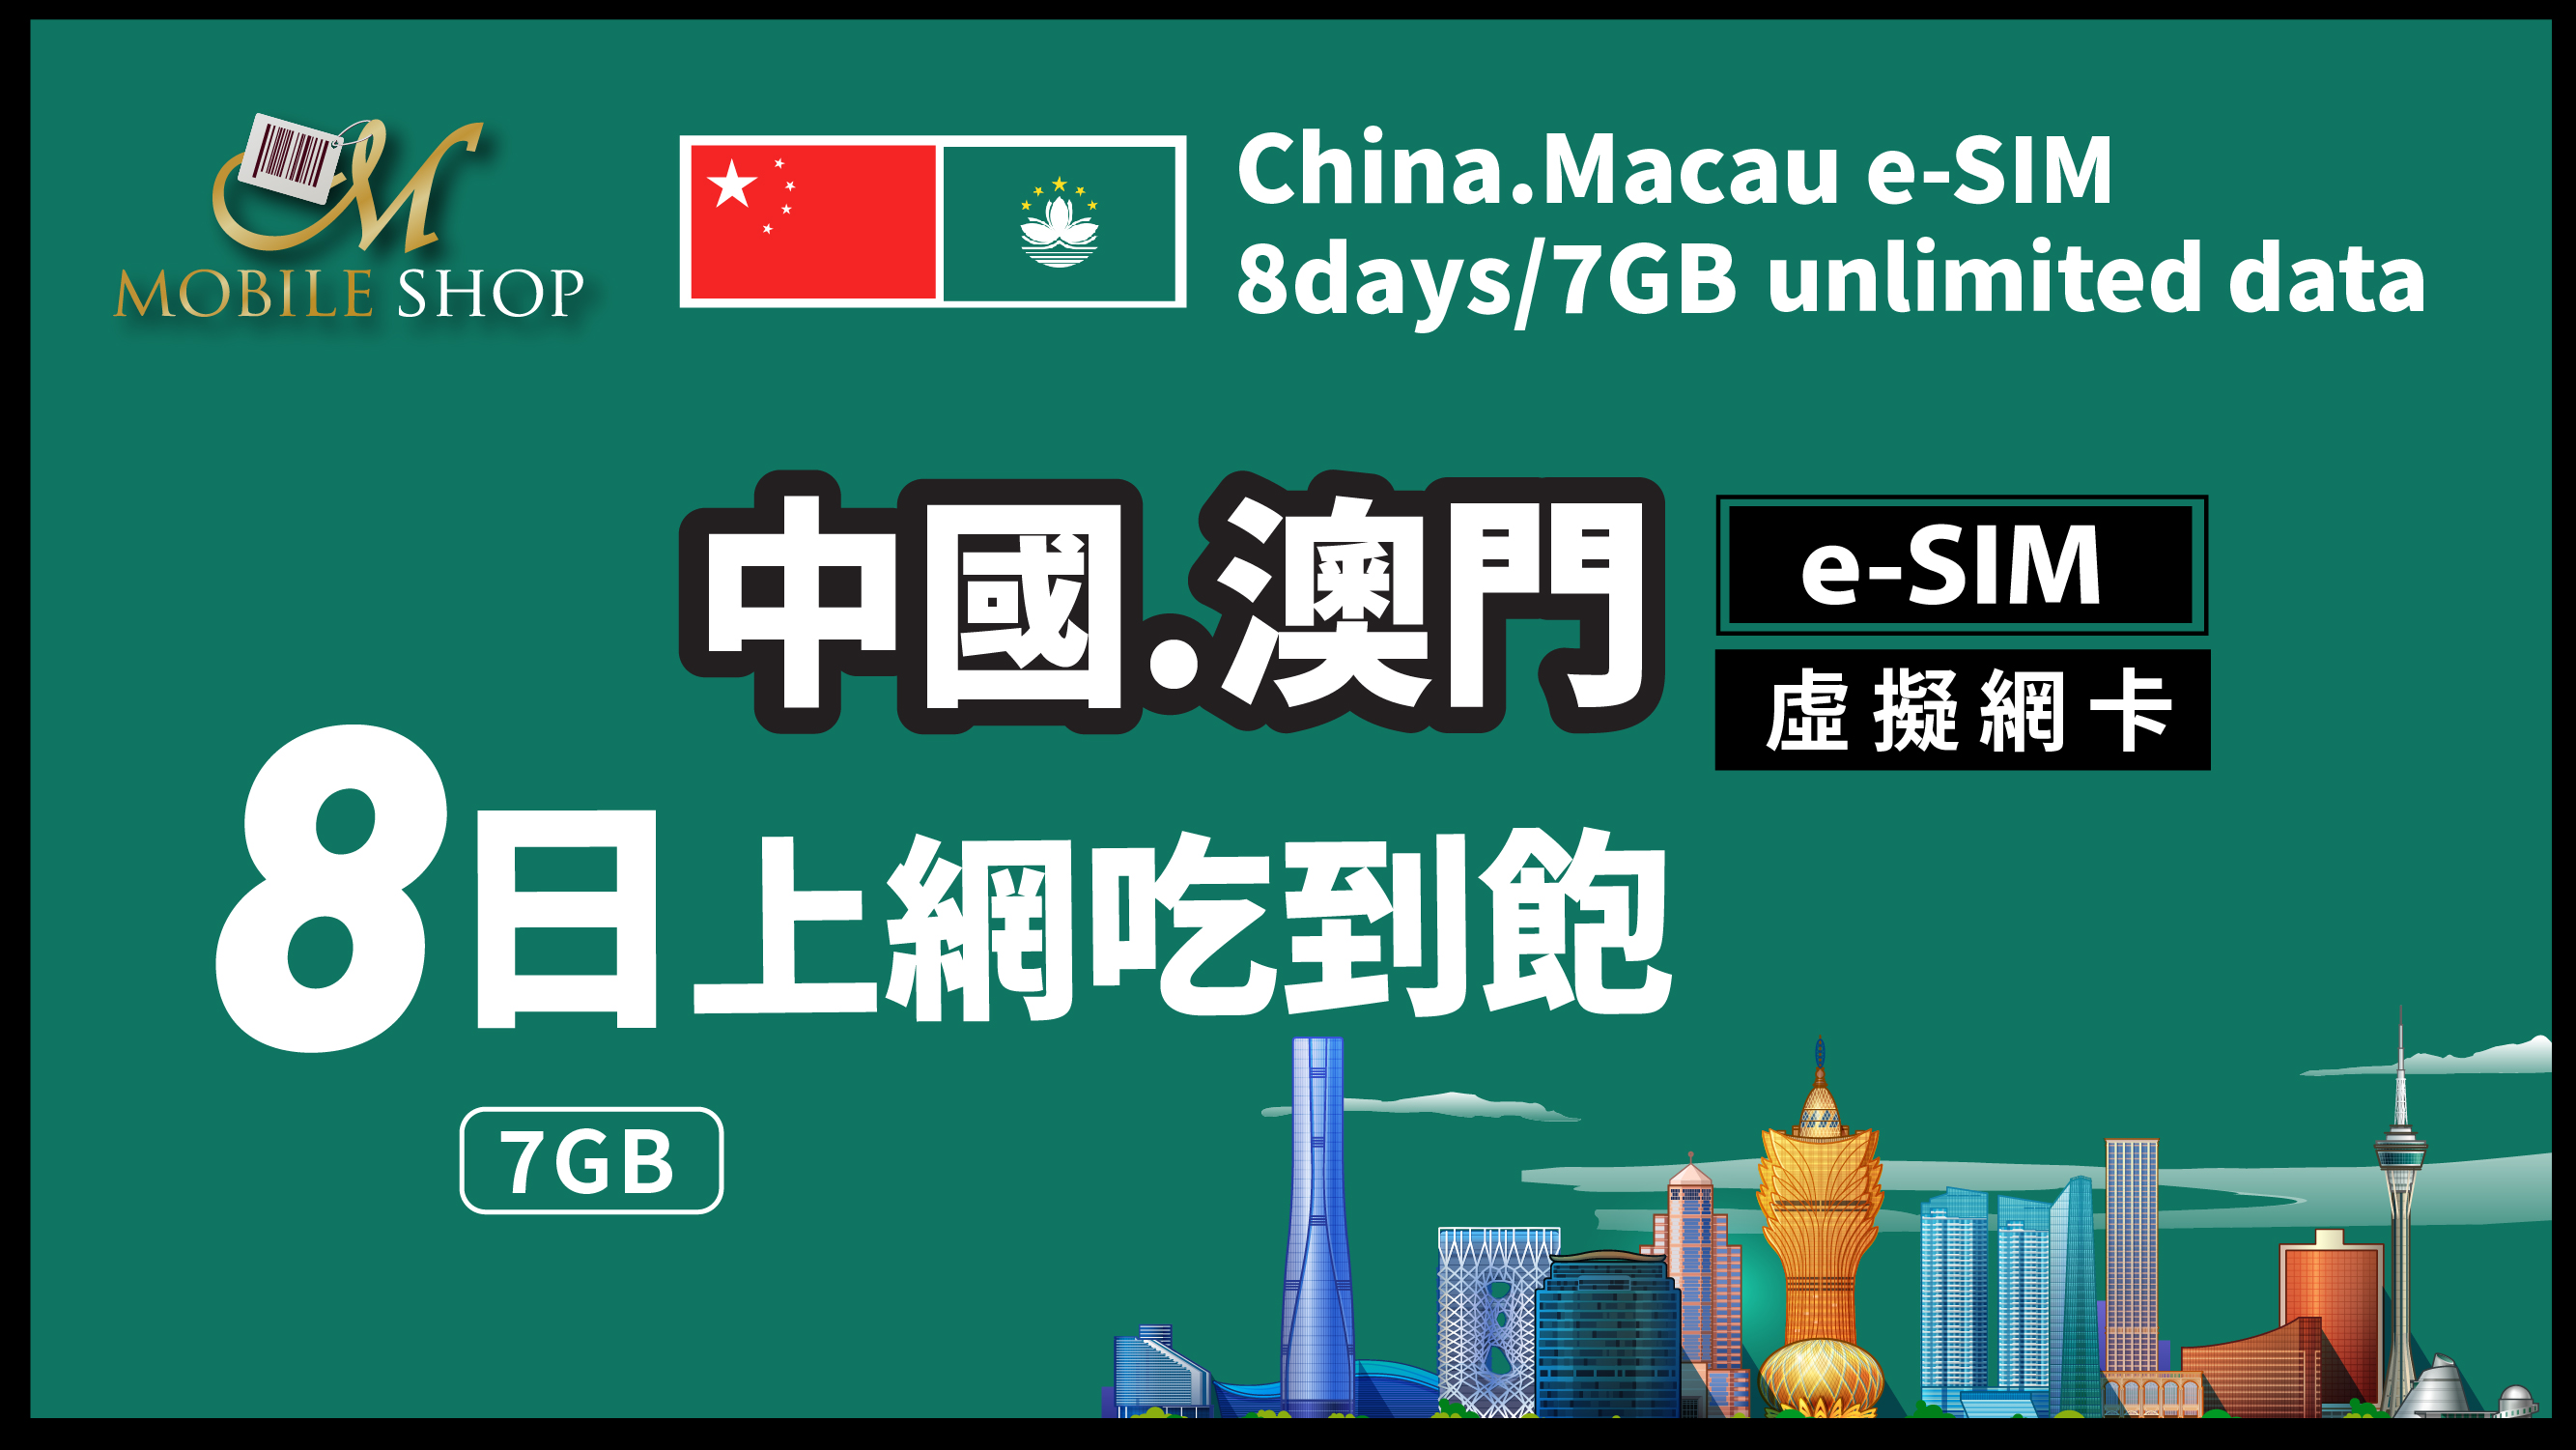 eSIM_China.Macau-8Days/7GB unlimited data